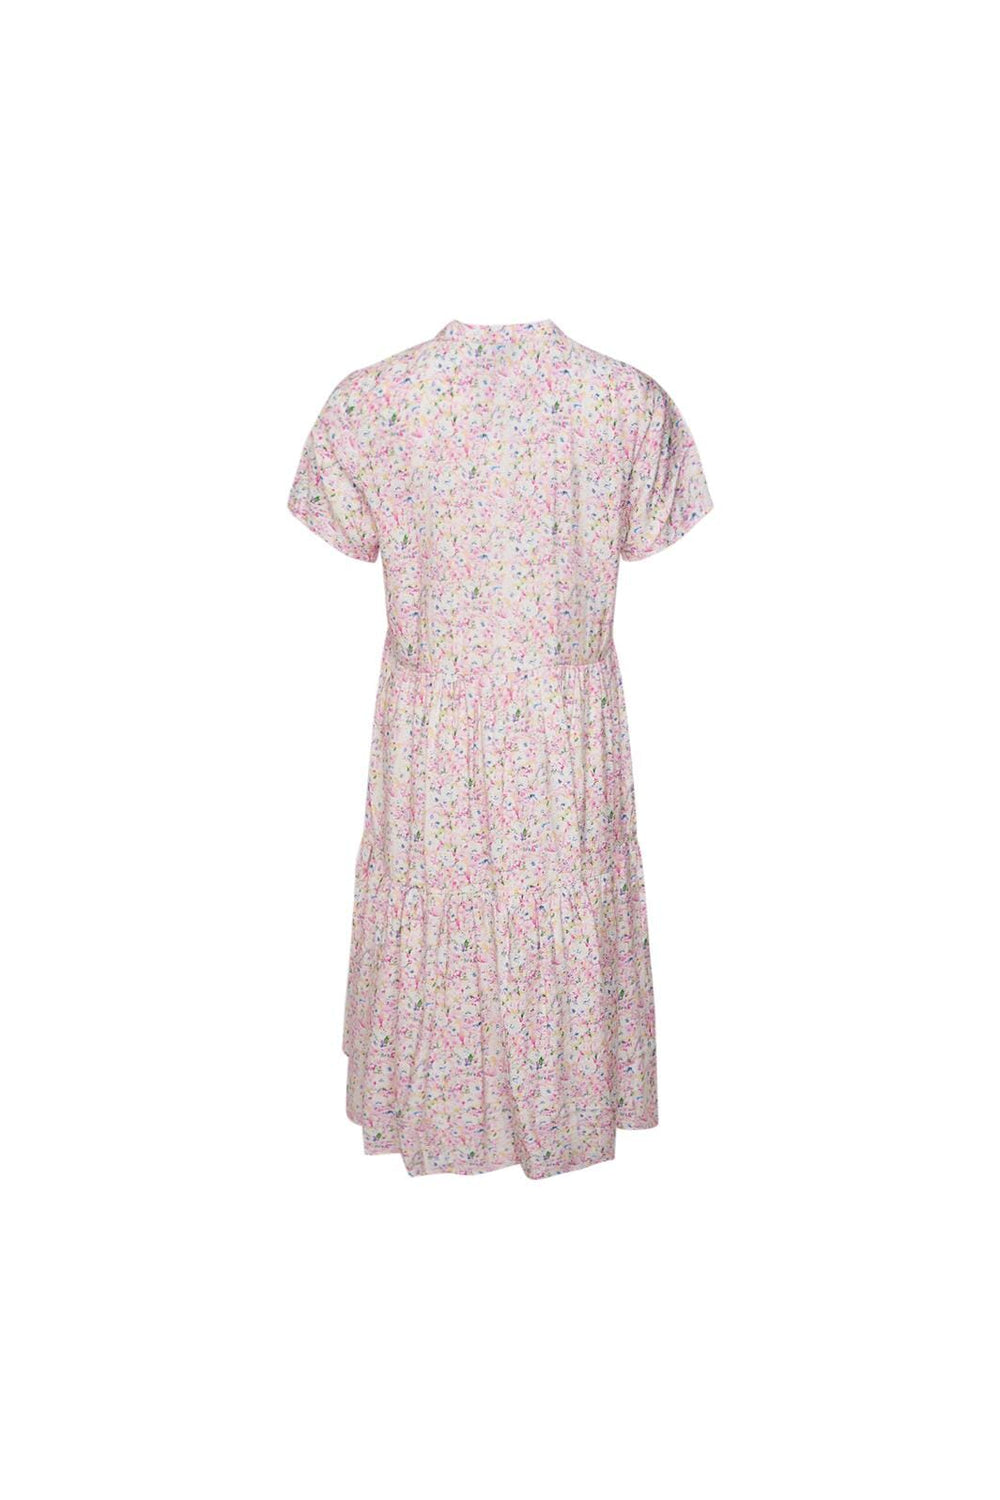 Noella - Allinge Lipe Dress - 497 Lilac Flower